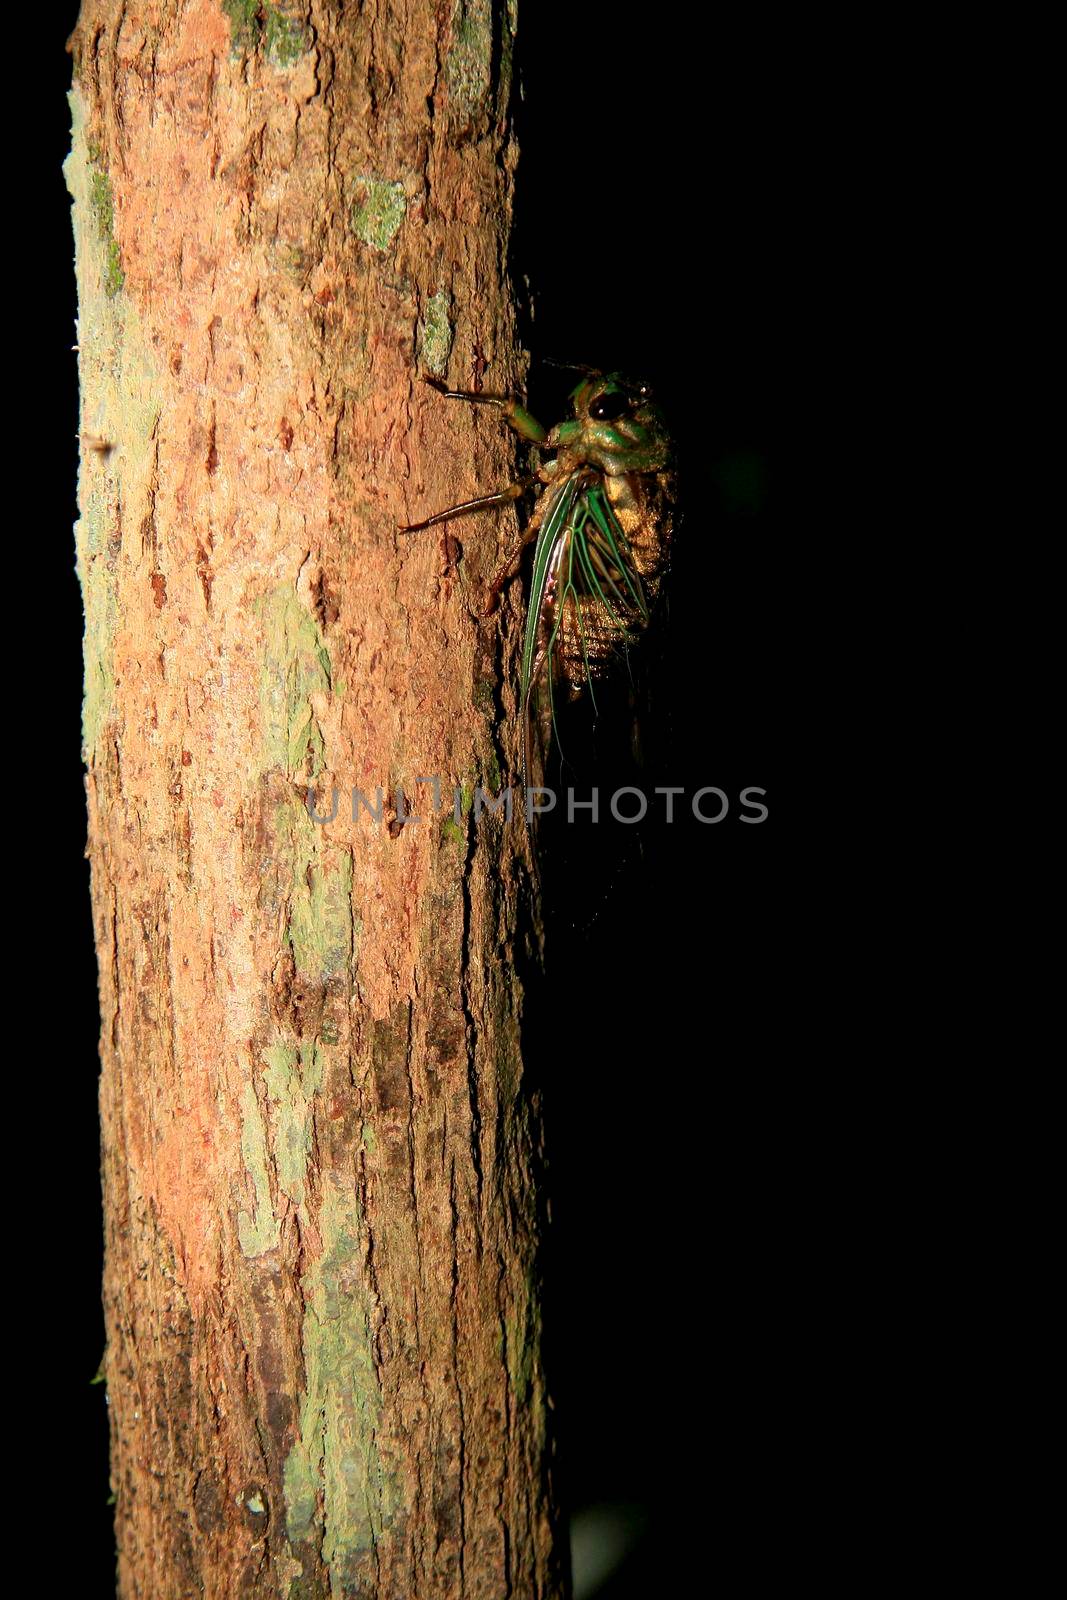 insect cicada on tree by joasouza